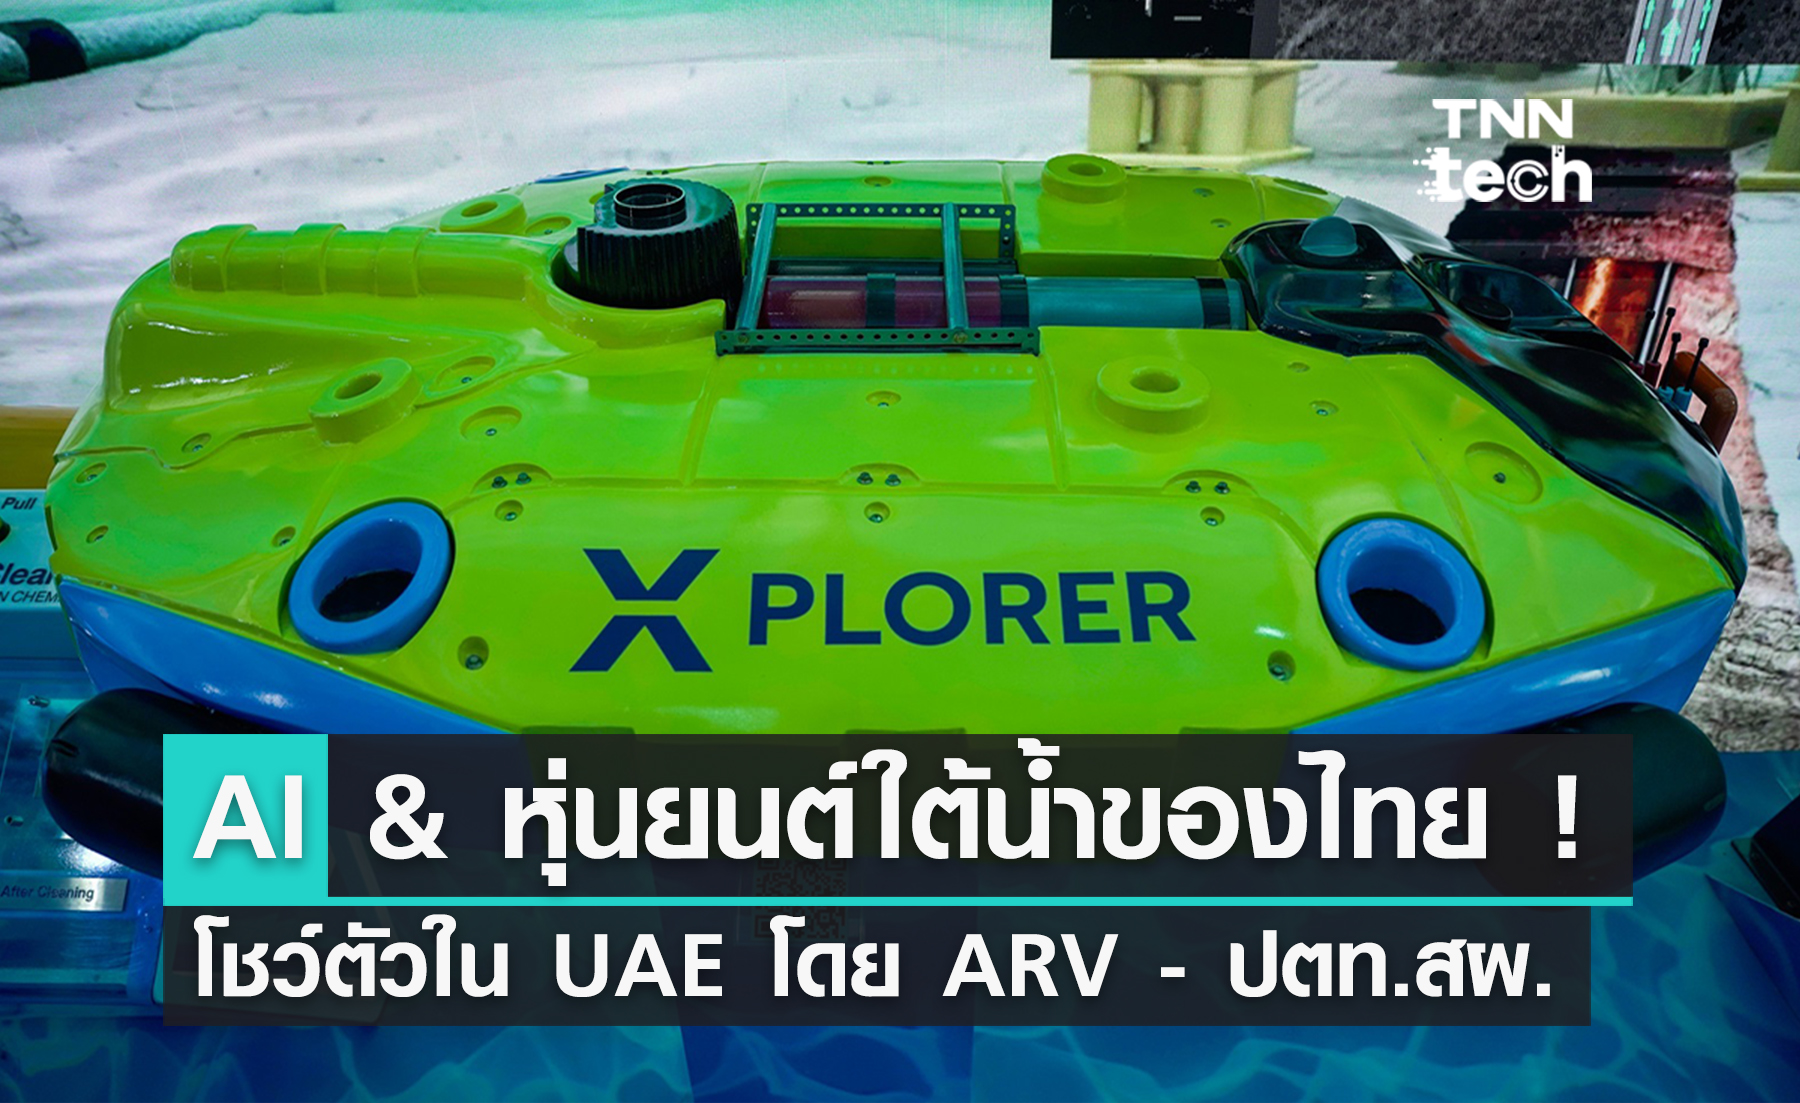 ARV ร่วม ปตท.สผ. โชว์เทคฯ AI และหุ่นยนต์ใต้น้ำสุดล้ำที่ UAE !